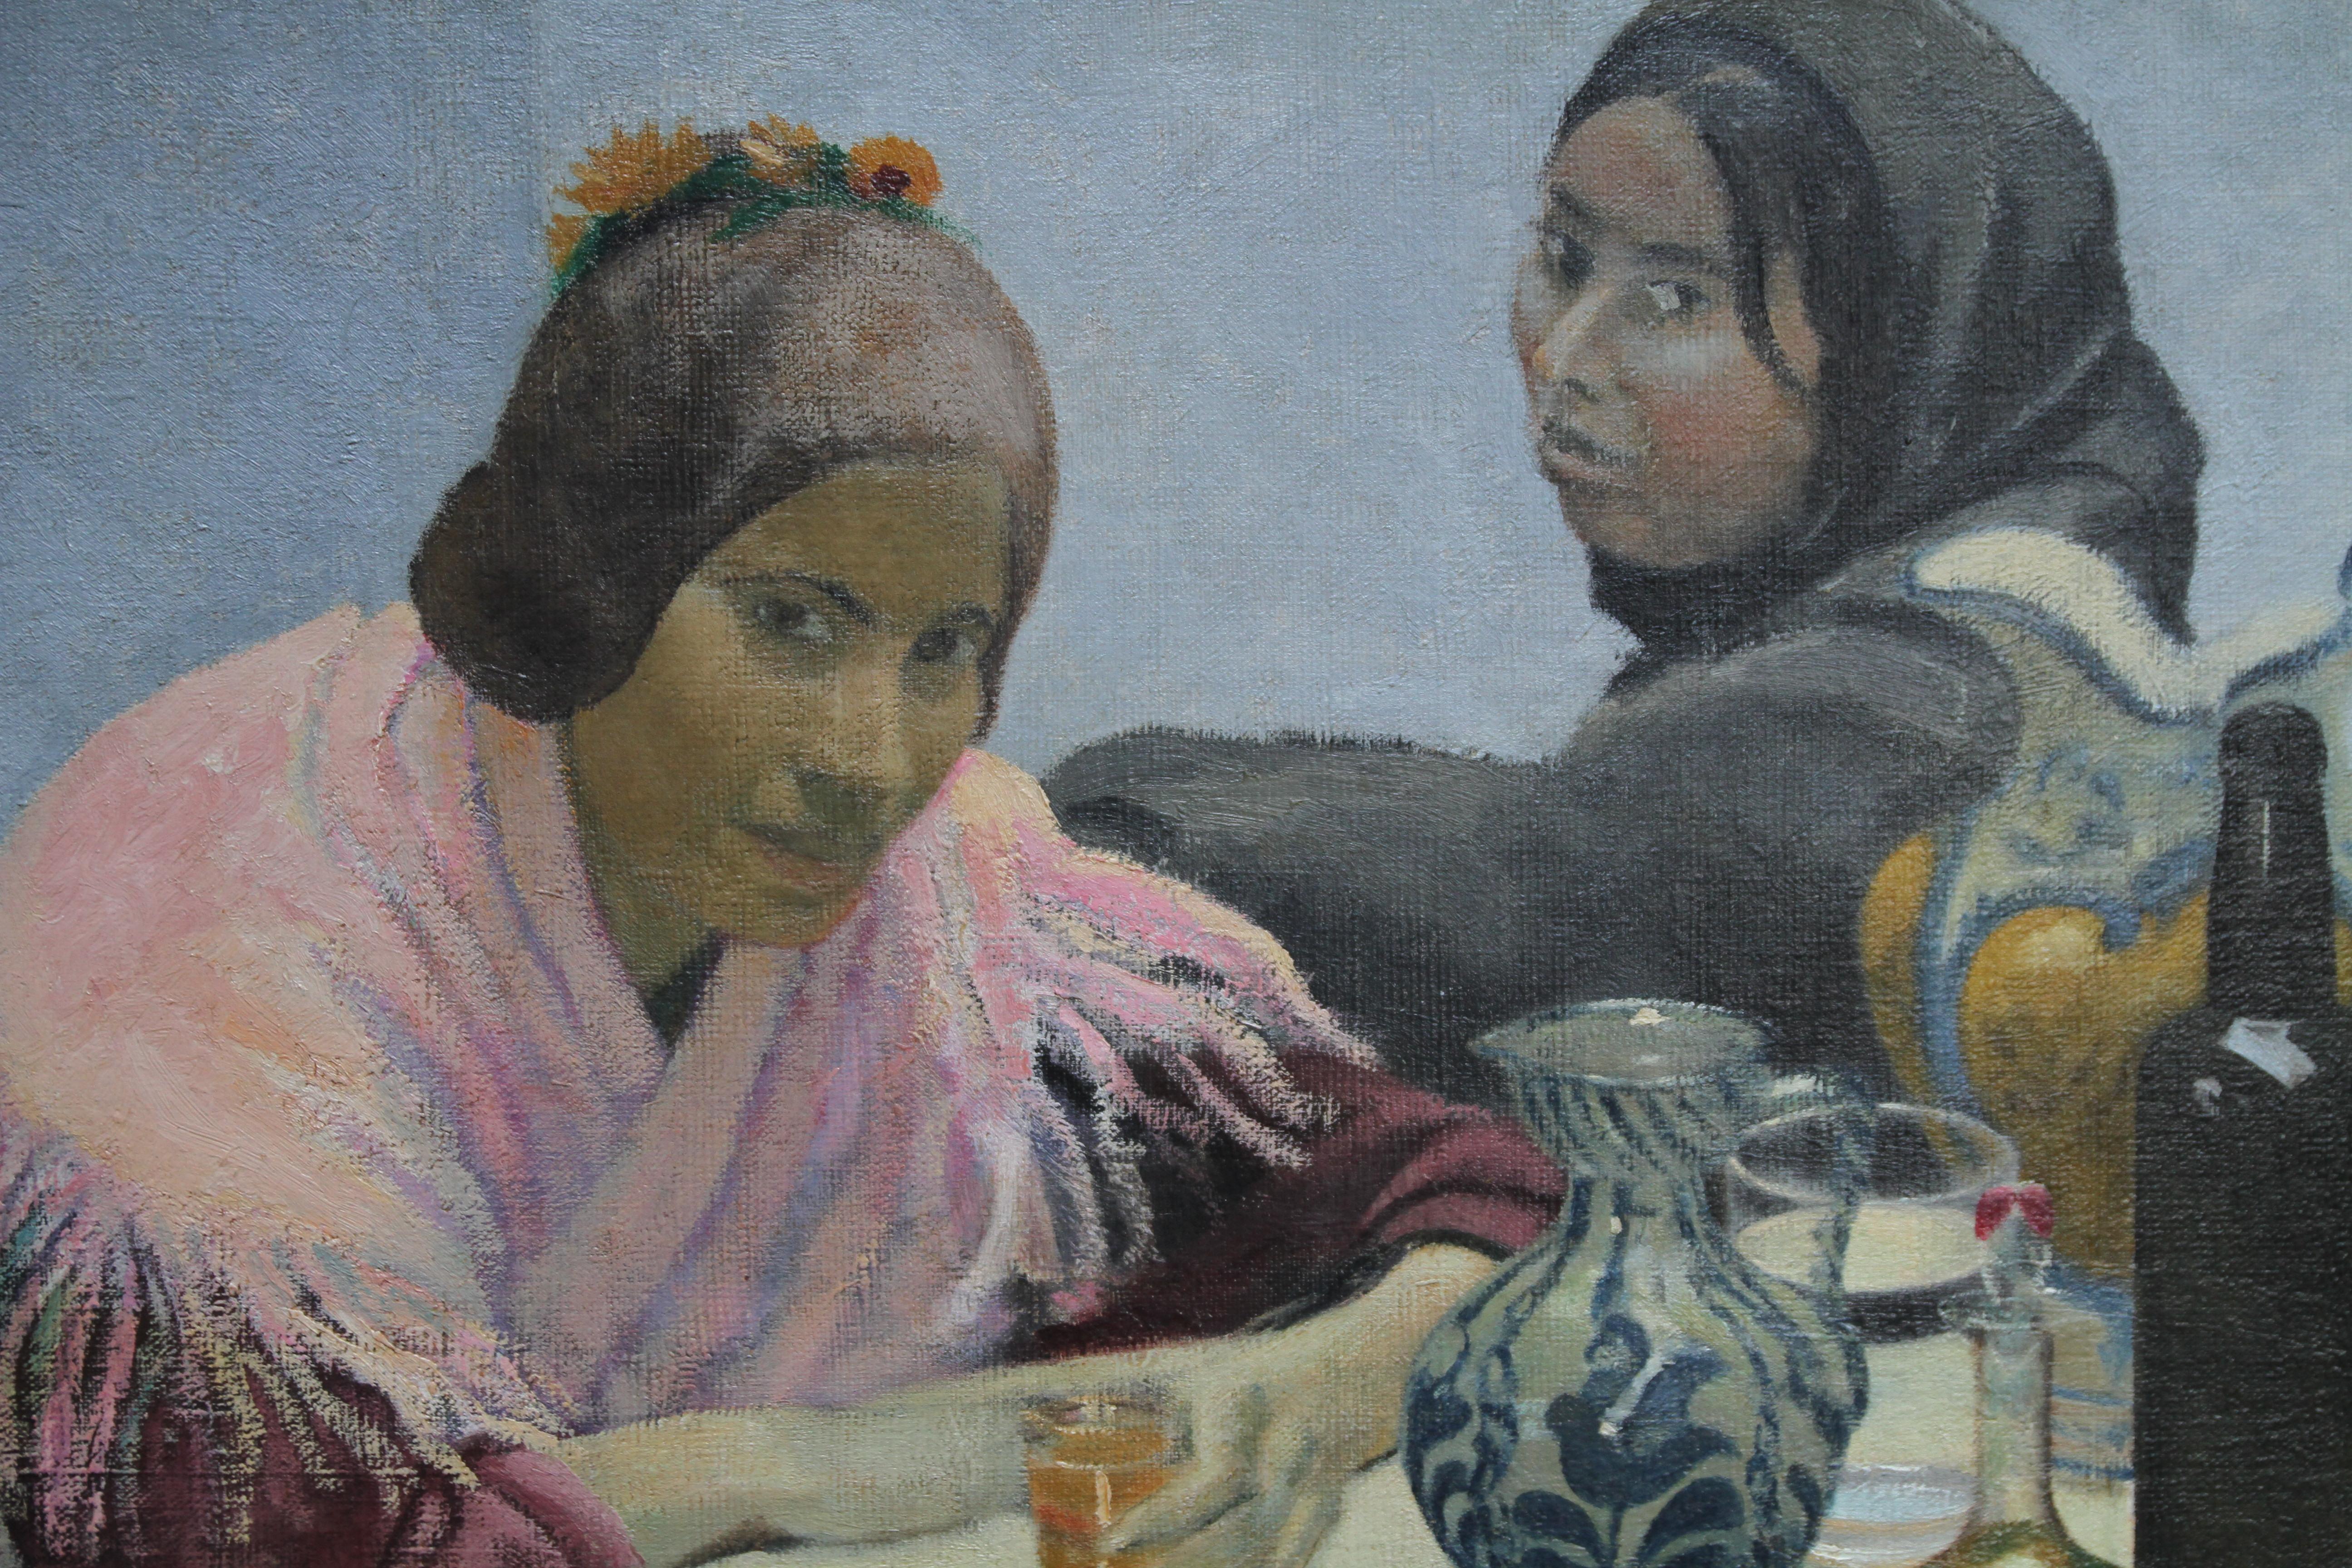 Ein Original-Öl auf Leinwand von der britischen Künstlerin Darsie Japp. Es wurde um 1930 gemalt und zeigt zwei Frauen, die an einem Tisch sitzen und etwas trinken. Ein sehr stimmungsvolles Ölgemälde aus der Zwischenkriegszeit.
Provenienz. James